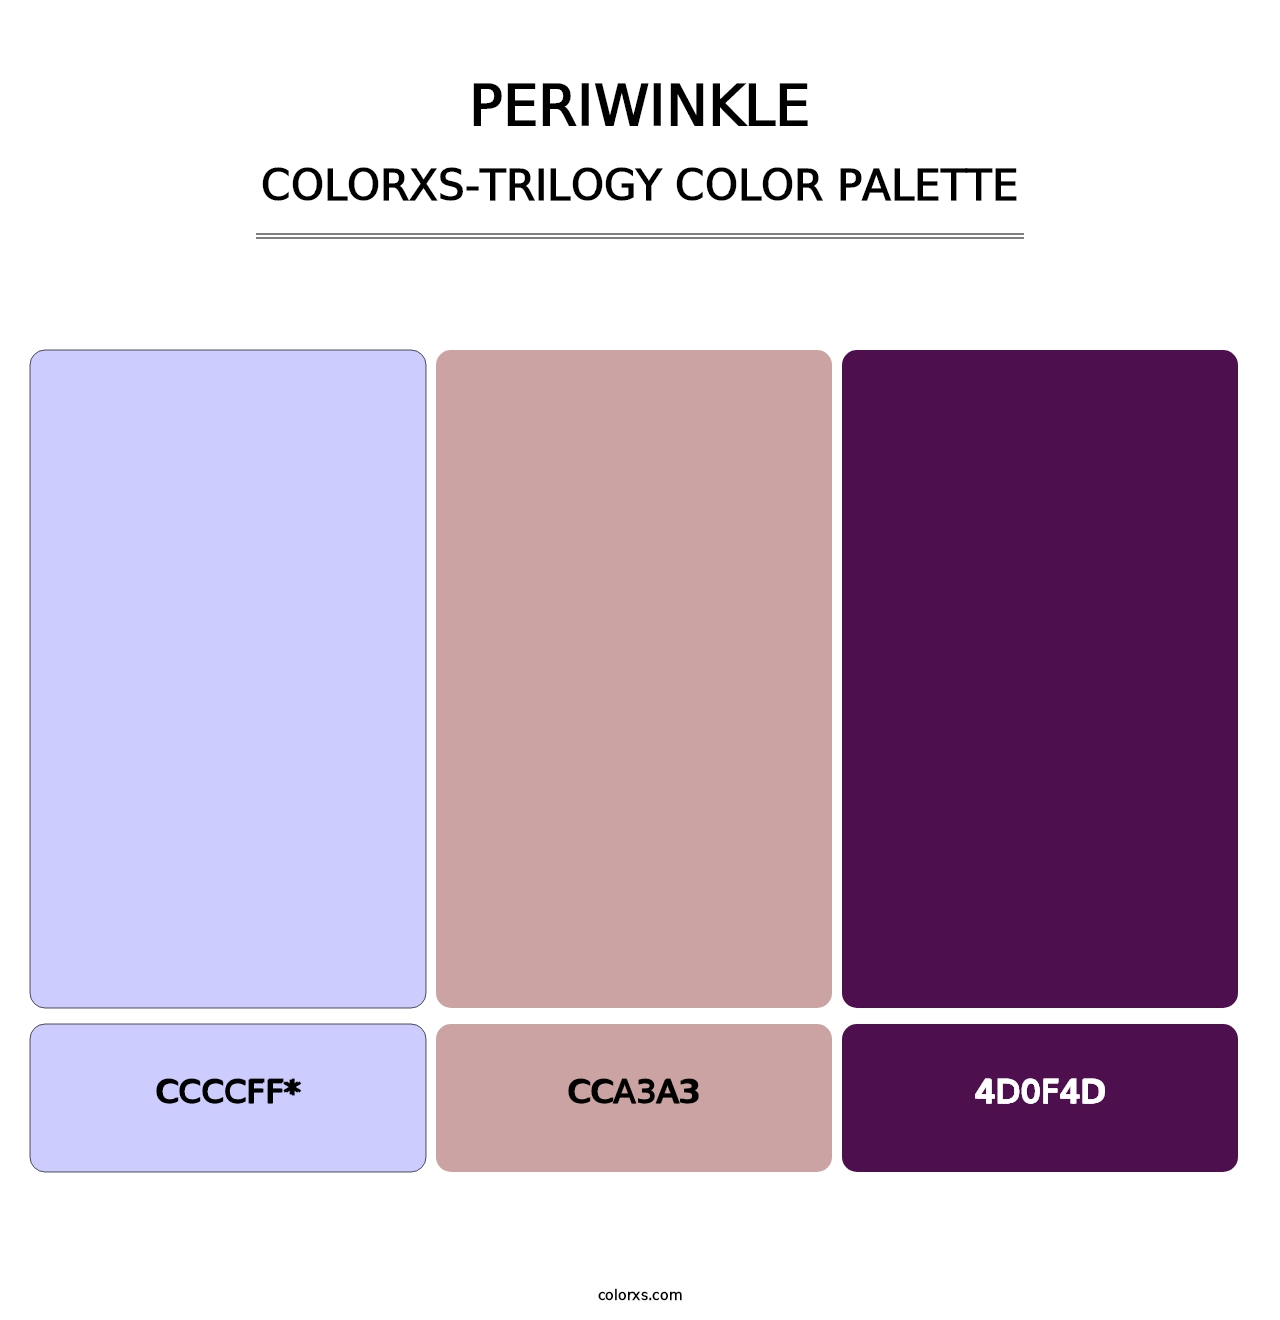 Periwinkle - Colorxs Trilogy Palette